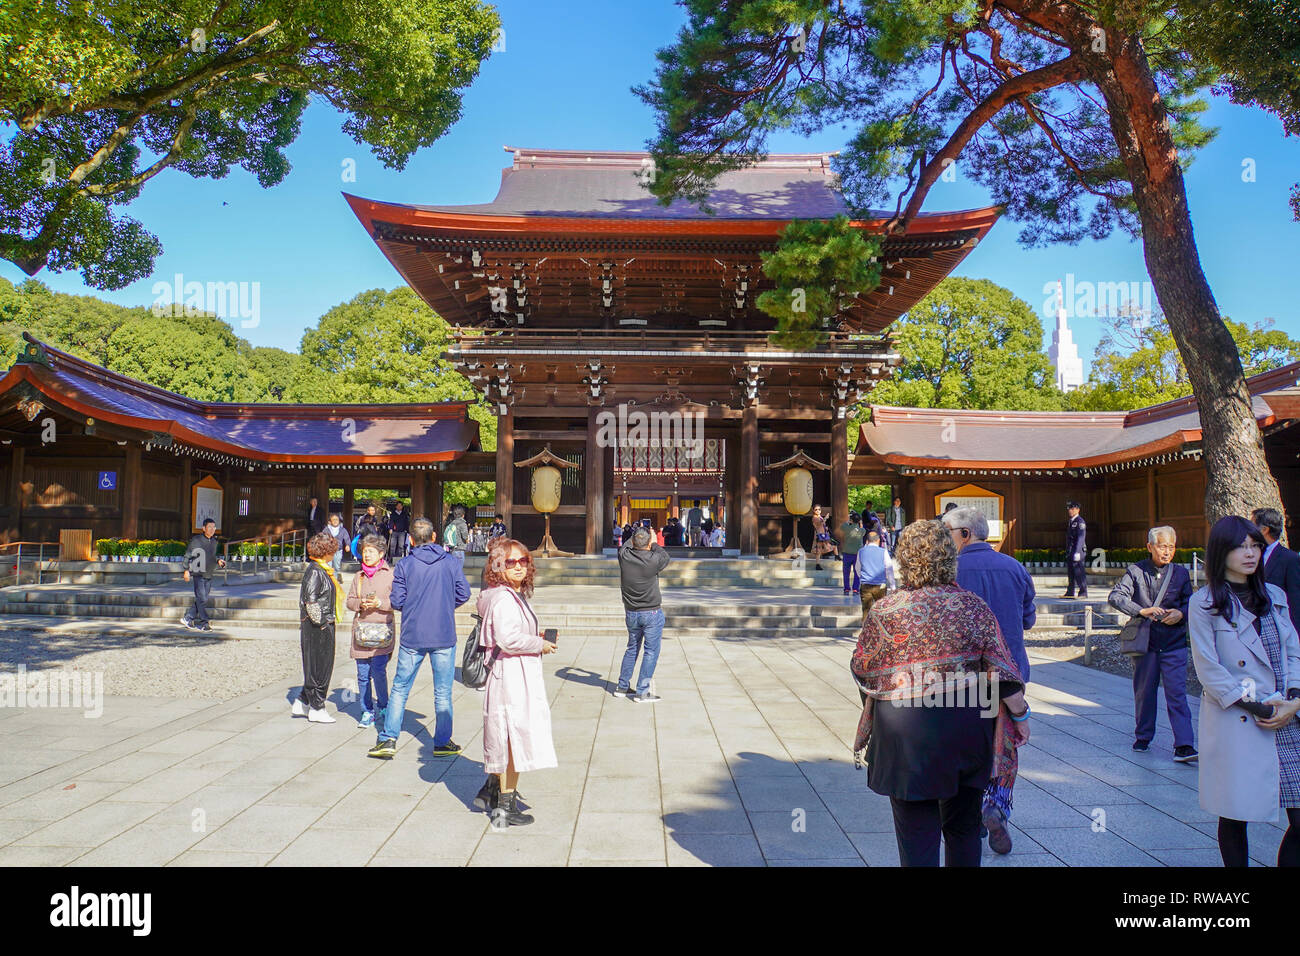 Meiji Jingu. Le sanctuaire de Meiji situé à Shibuya, Tokyo, est le sanctuaire Shinto dédié à l'esprits divinisés de l'empereur Meiji et de son épouse, Empr Banque D'Images